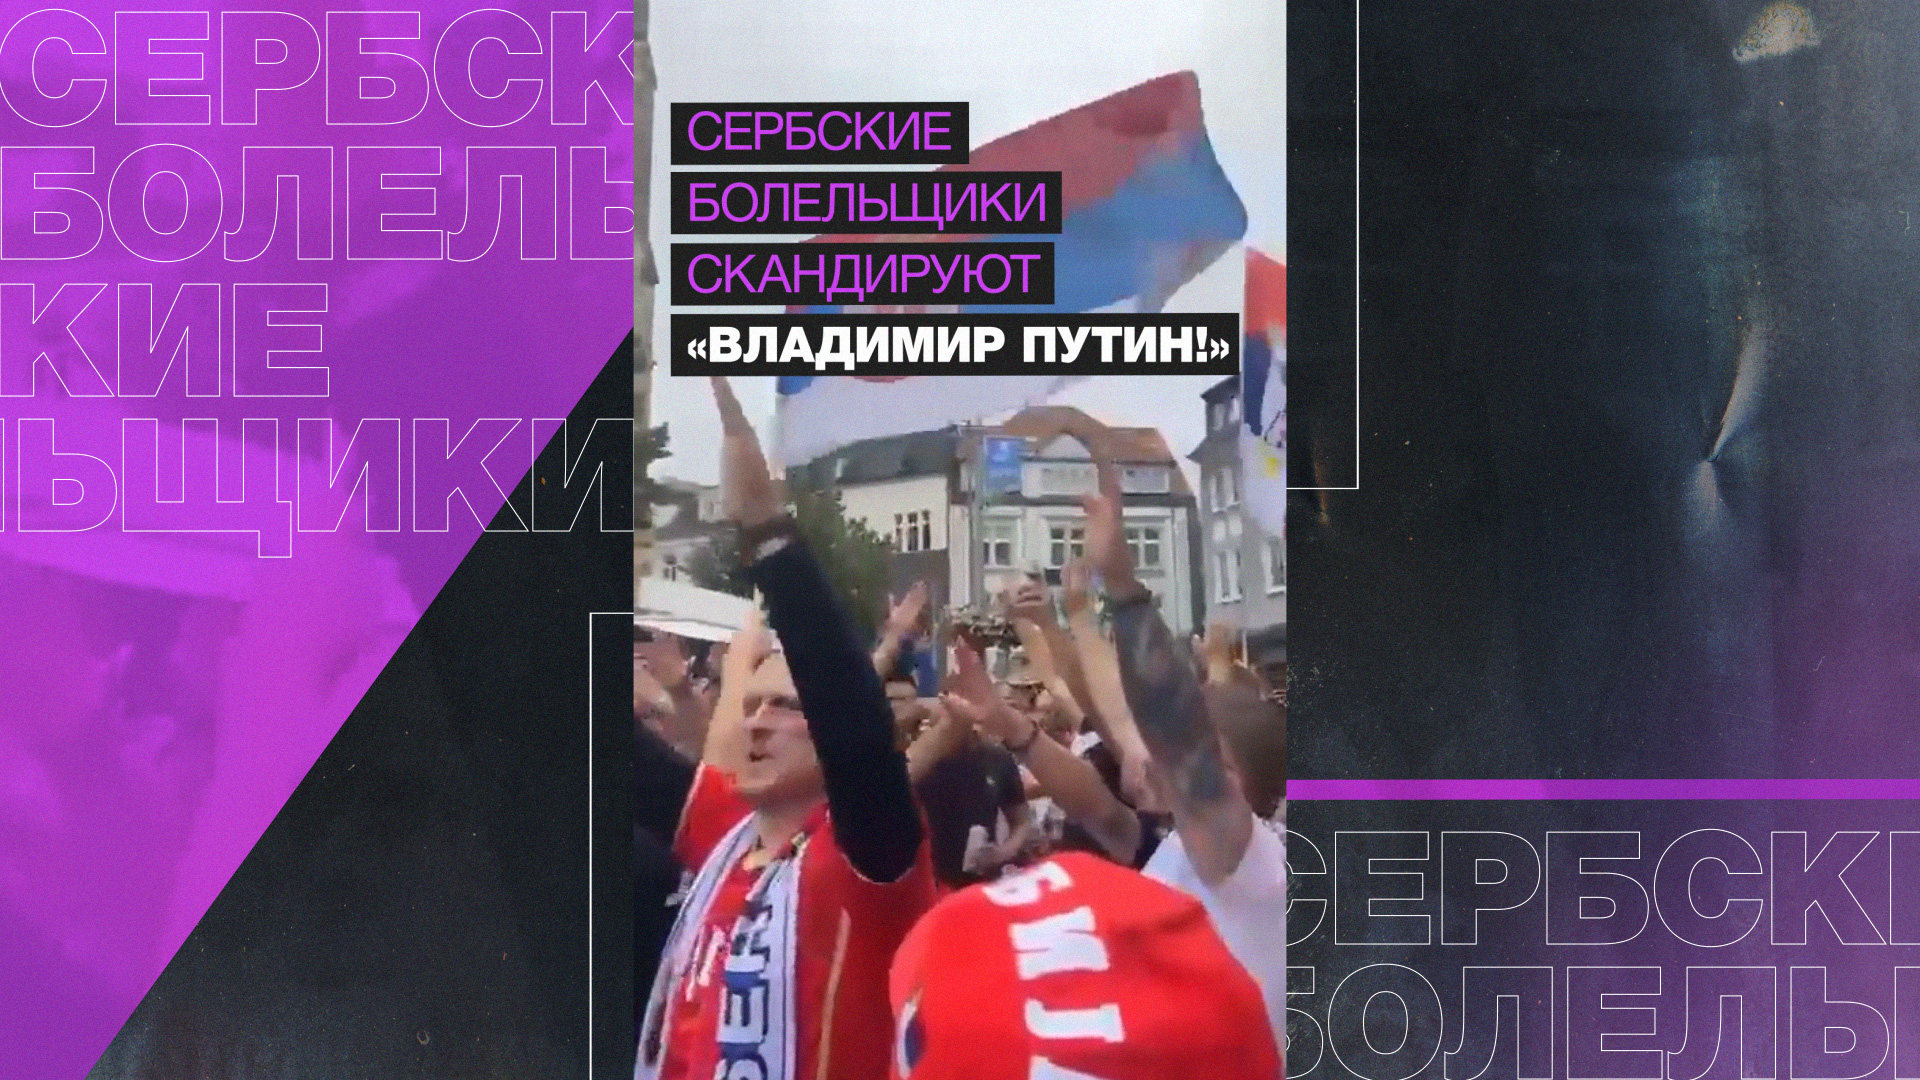 Сербские болельщики скандируют «Владимир Путин!»